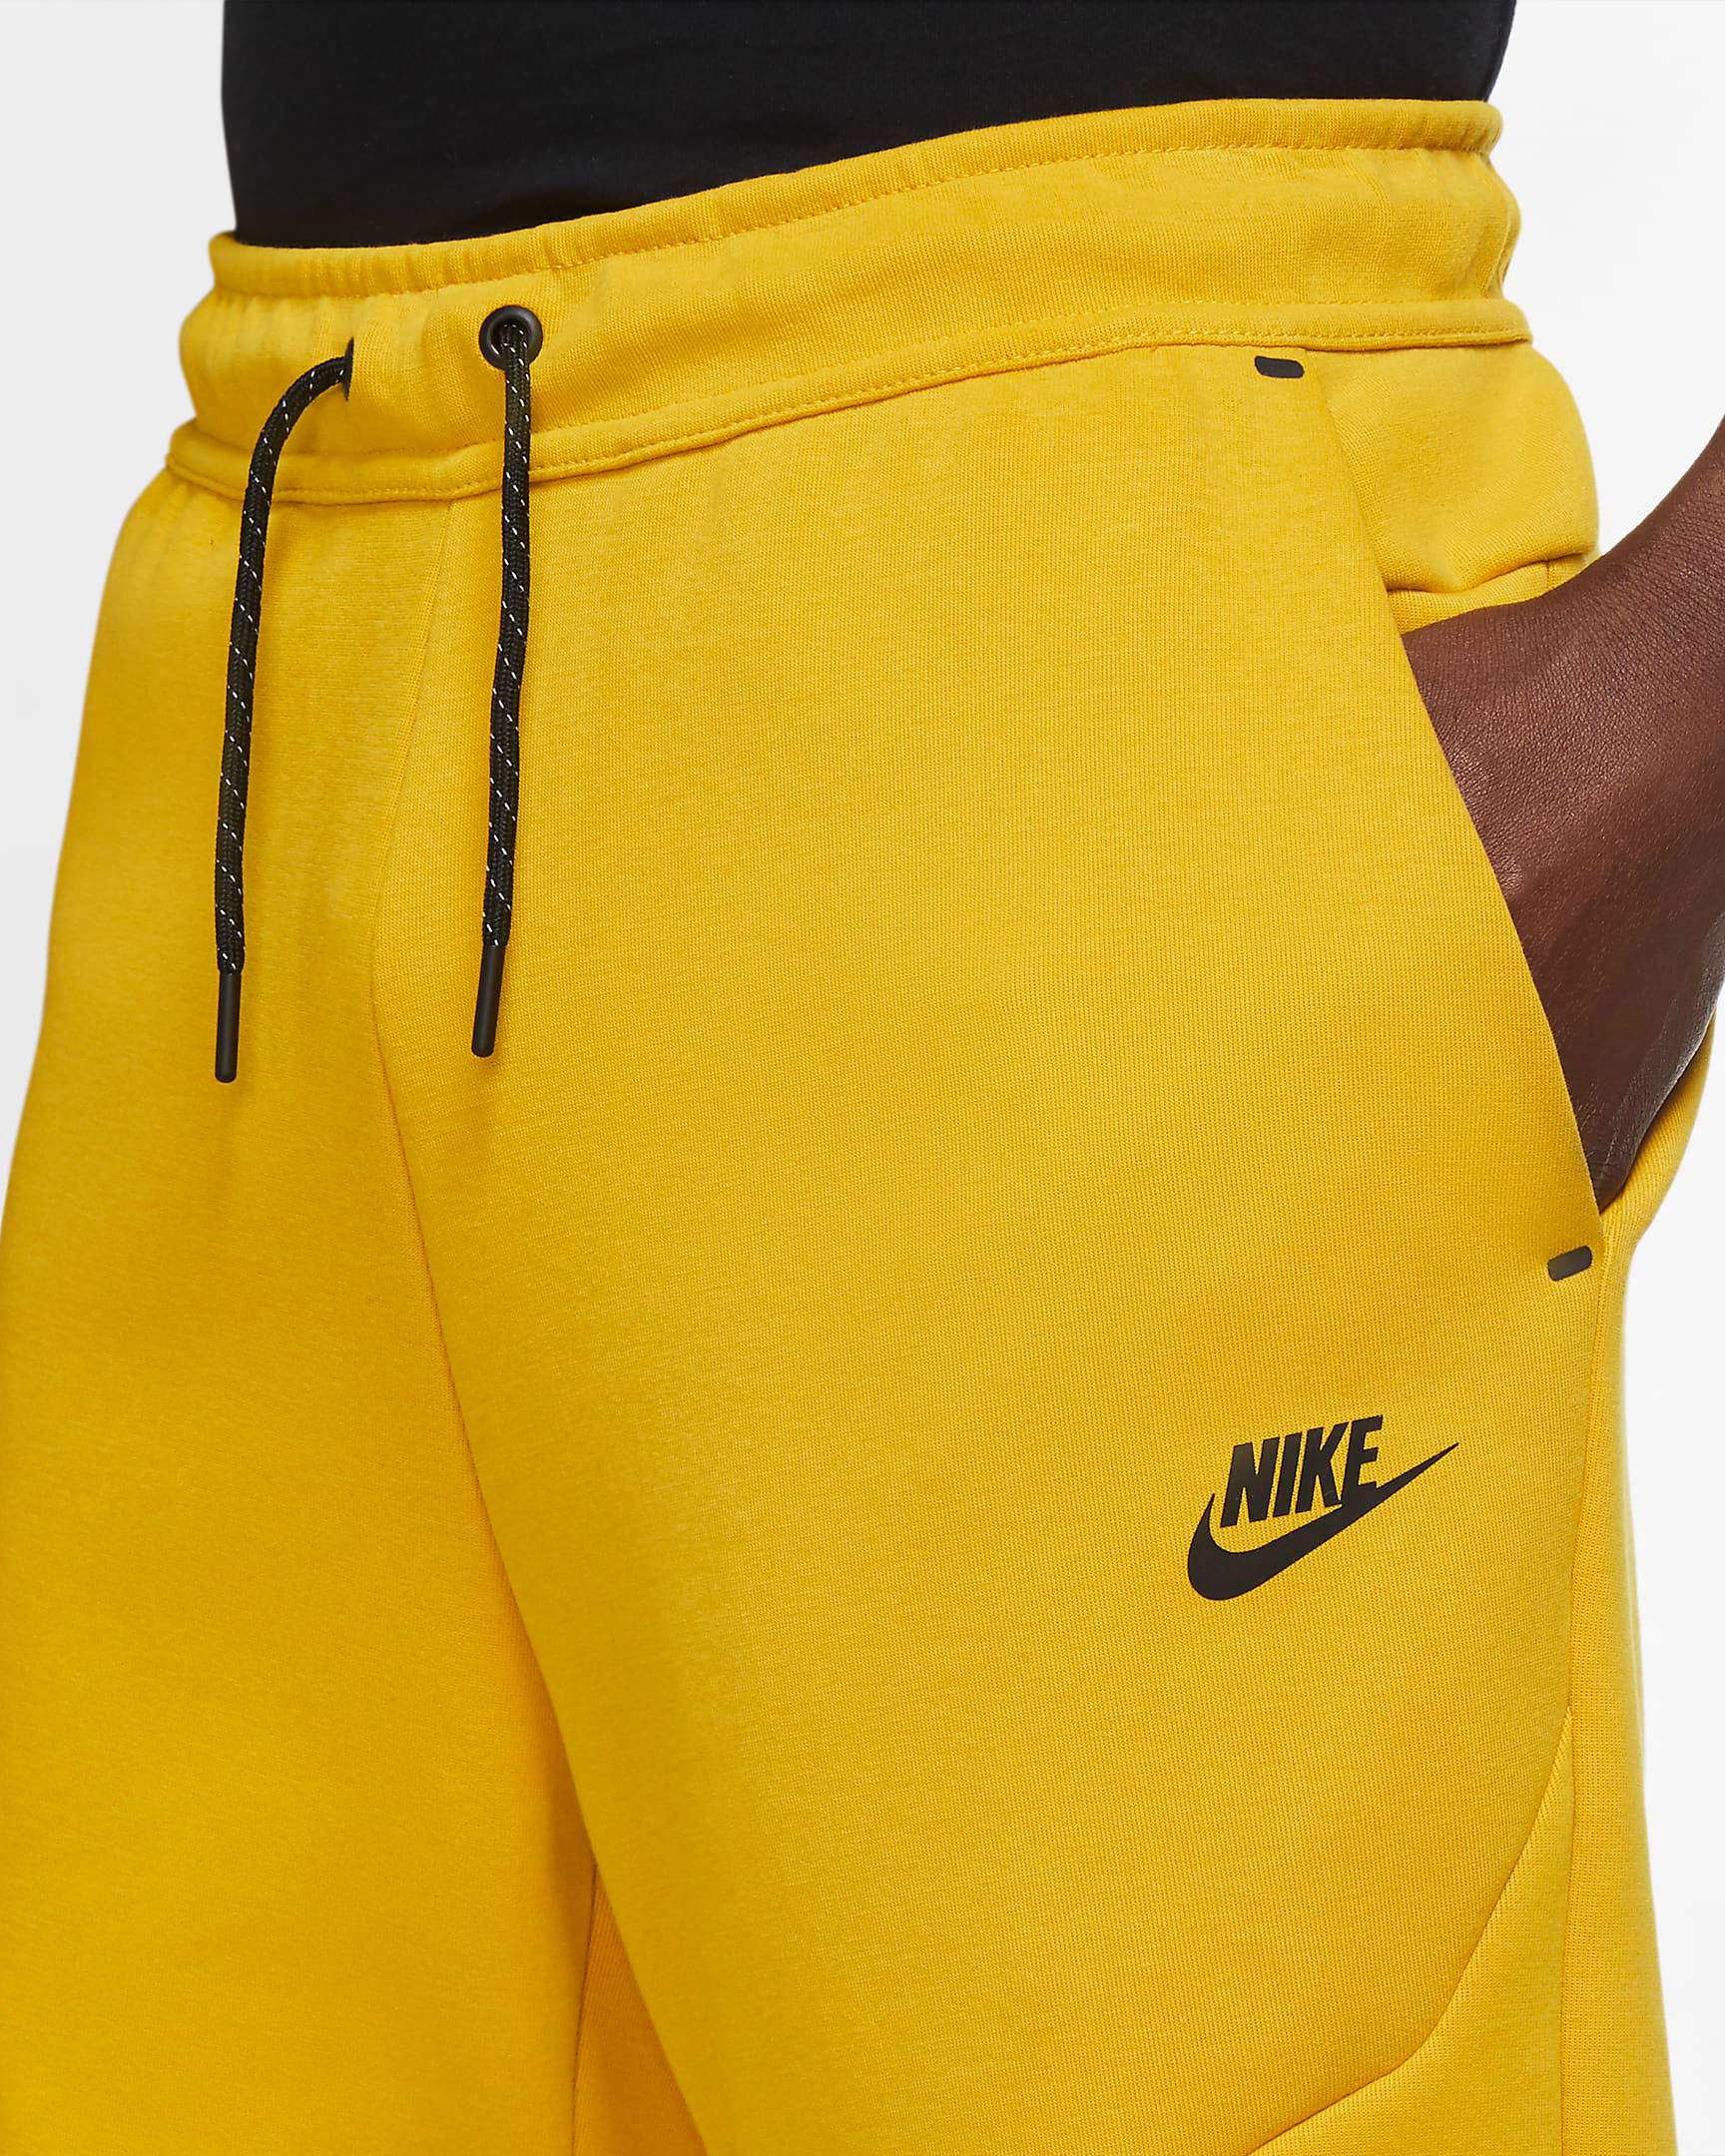 nike-tech-fleece-pants-yellow-sulfur-3